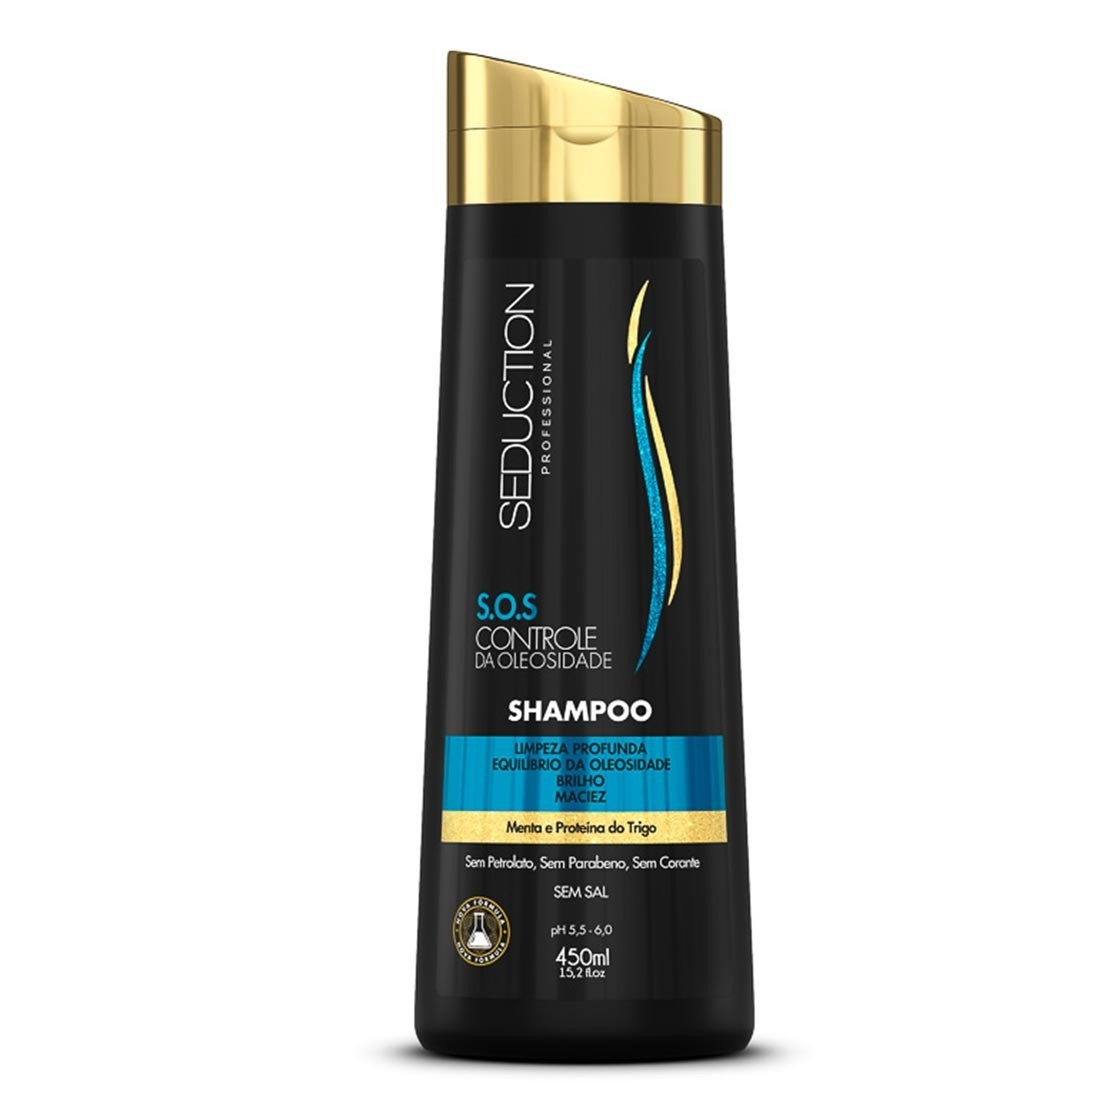 Shampoo Seduction Controle Da Oleosidade Eico 450ml